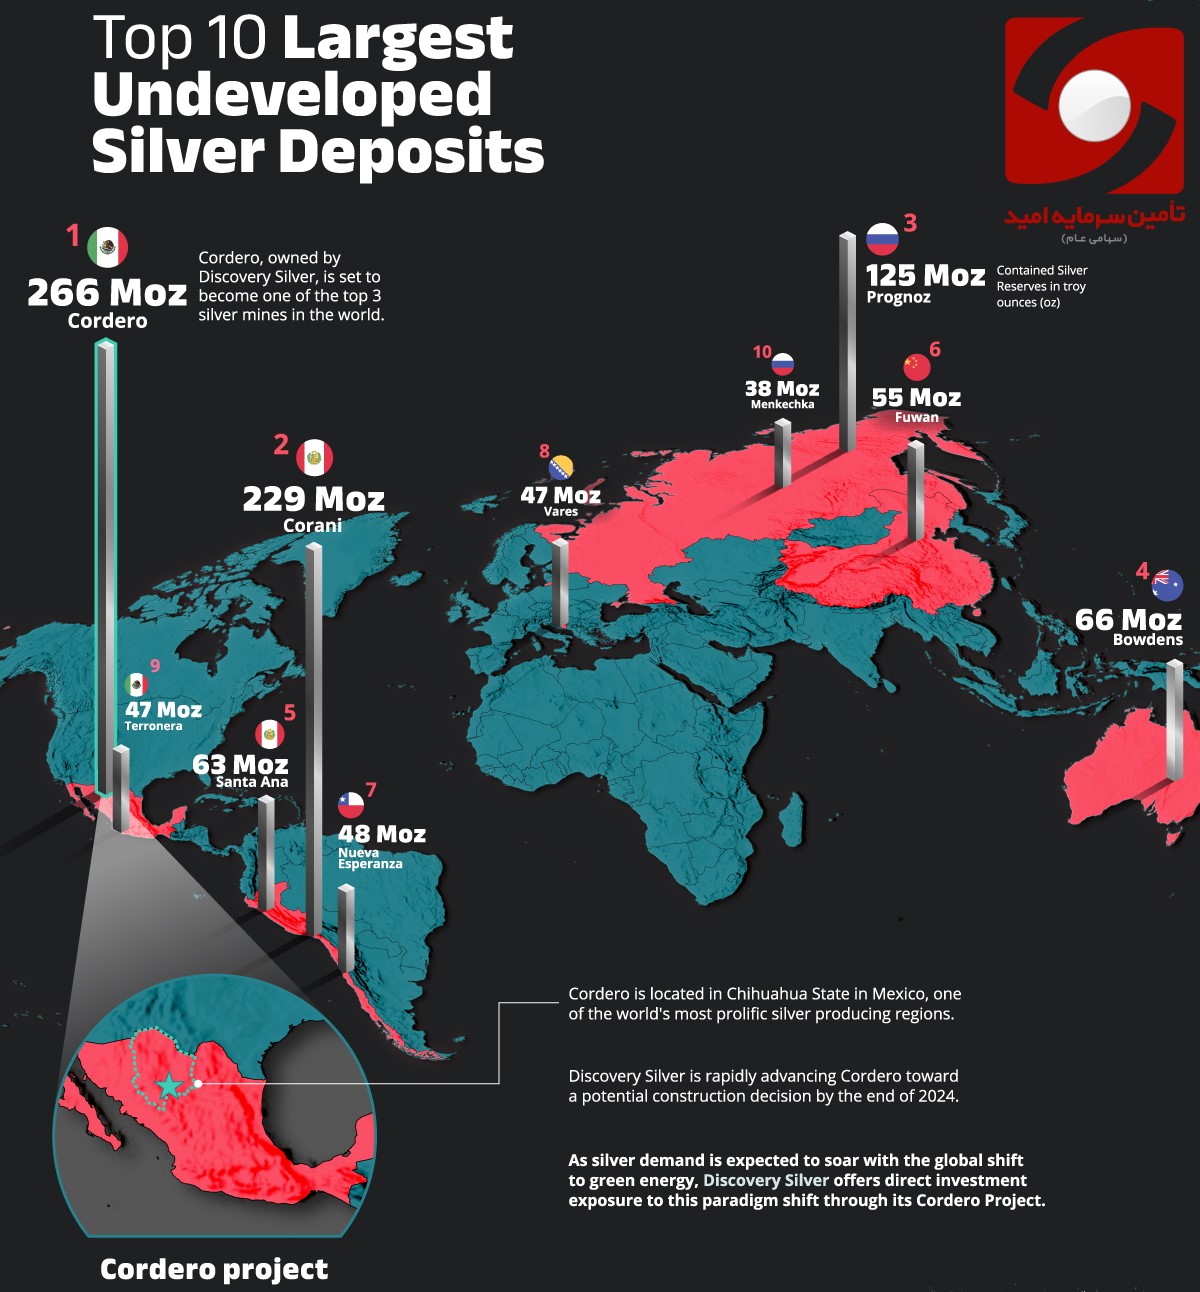 10 معدن نقره توسعه نیافته در سطح جهان